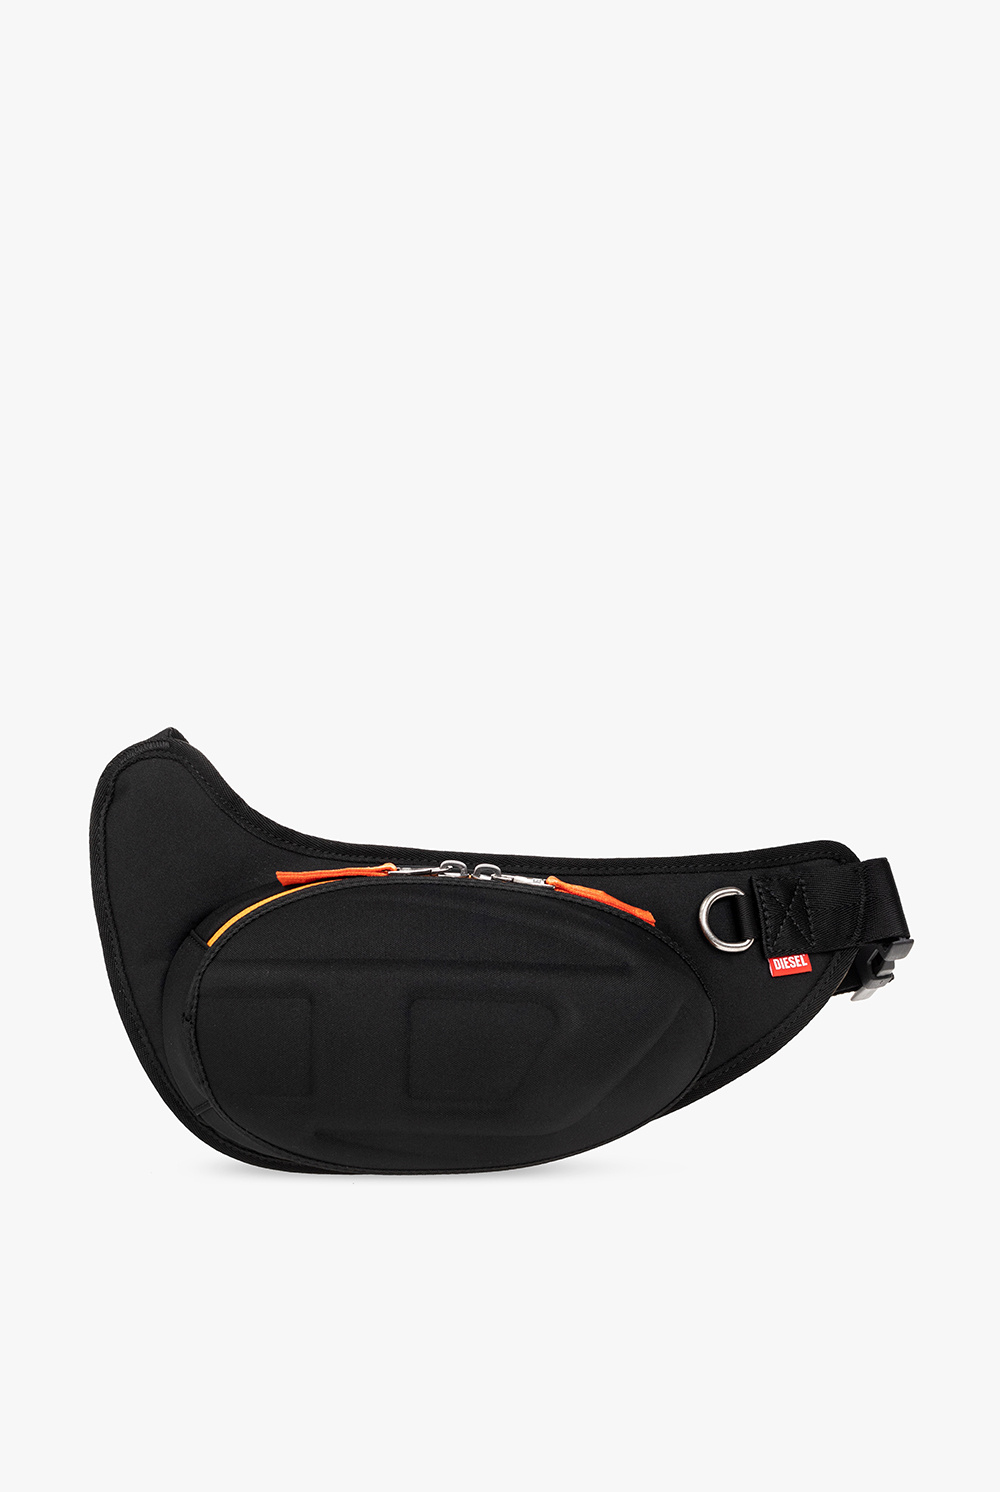 Diesel ‘1DR-POD’ belt bag